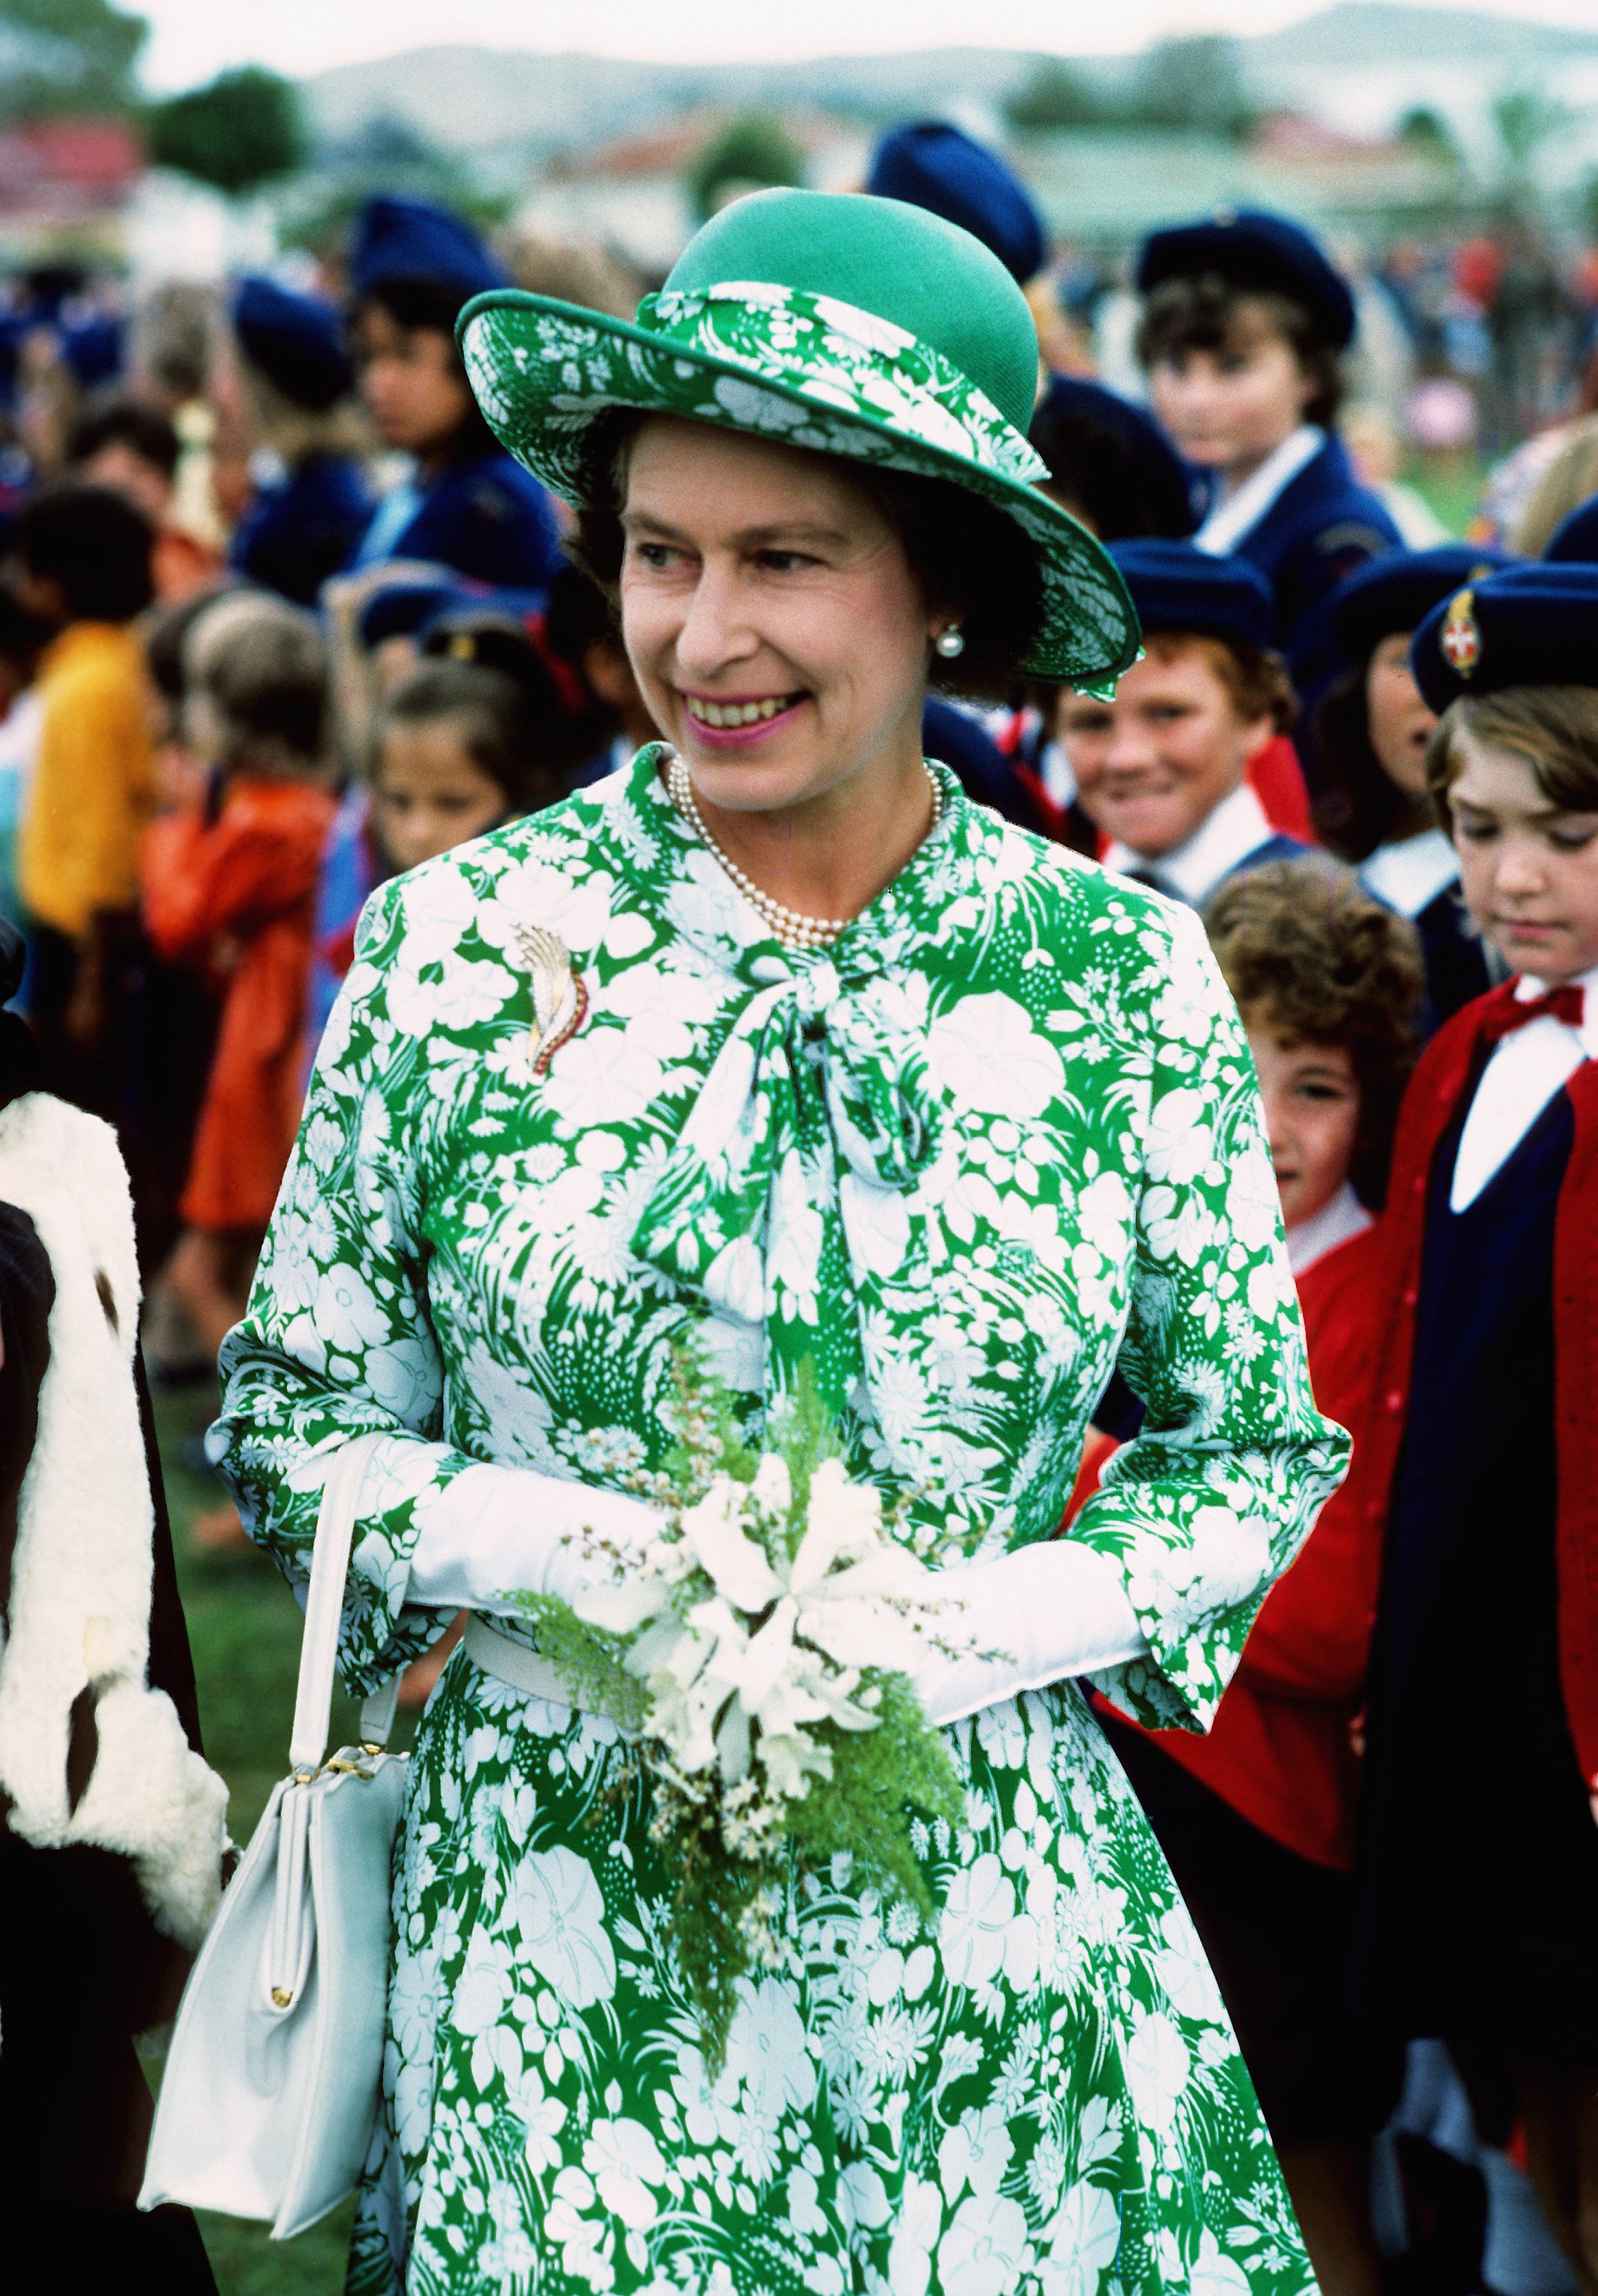 Queen Elizabeth II at her 1977 Jubilee in New Zealand. | Source Getty Images